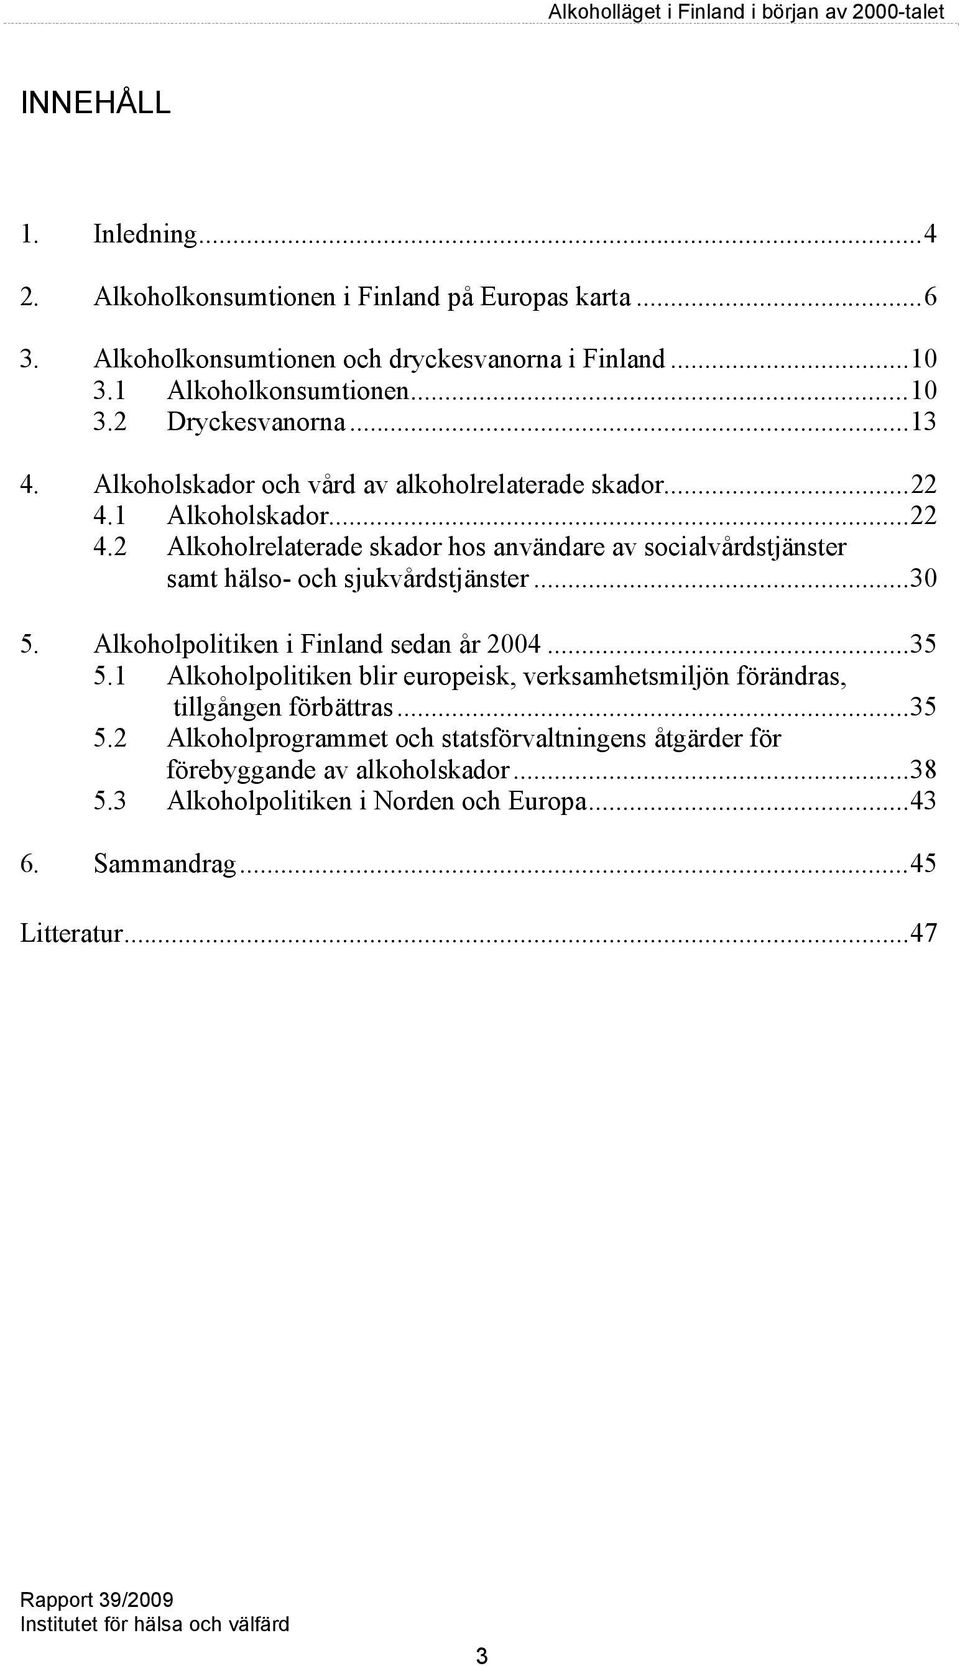 .. 30 5. Alkoholpolitiken i Finland sedan år 2004... 35 5.1 Alkoholpolitiken blir europeisk, verksamhetsmiljön förändras, tillgången förbättras... 35 5.2 Alkoholprogrammet och statsförvaltningens åtgärder för förebyggande av alkoholskador.